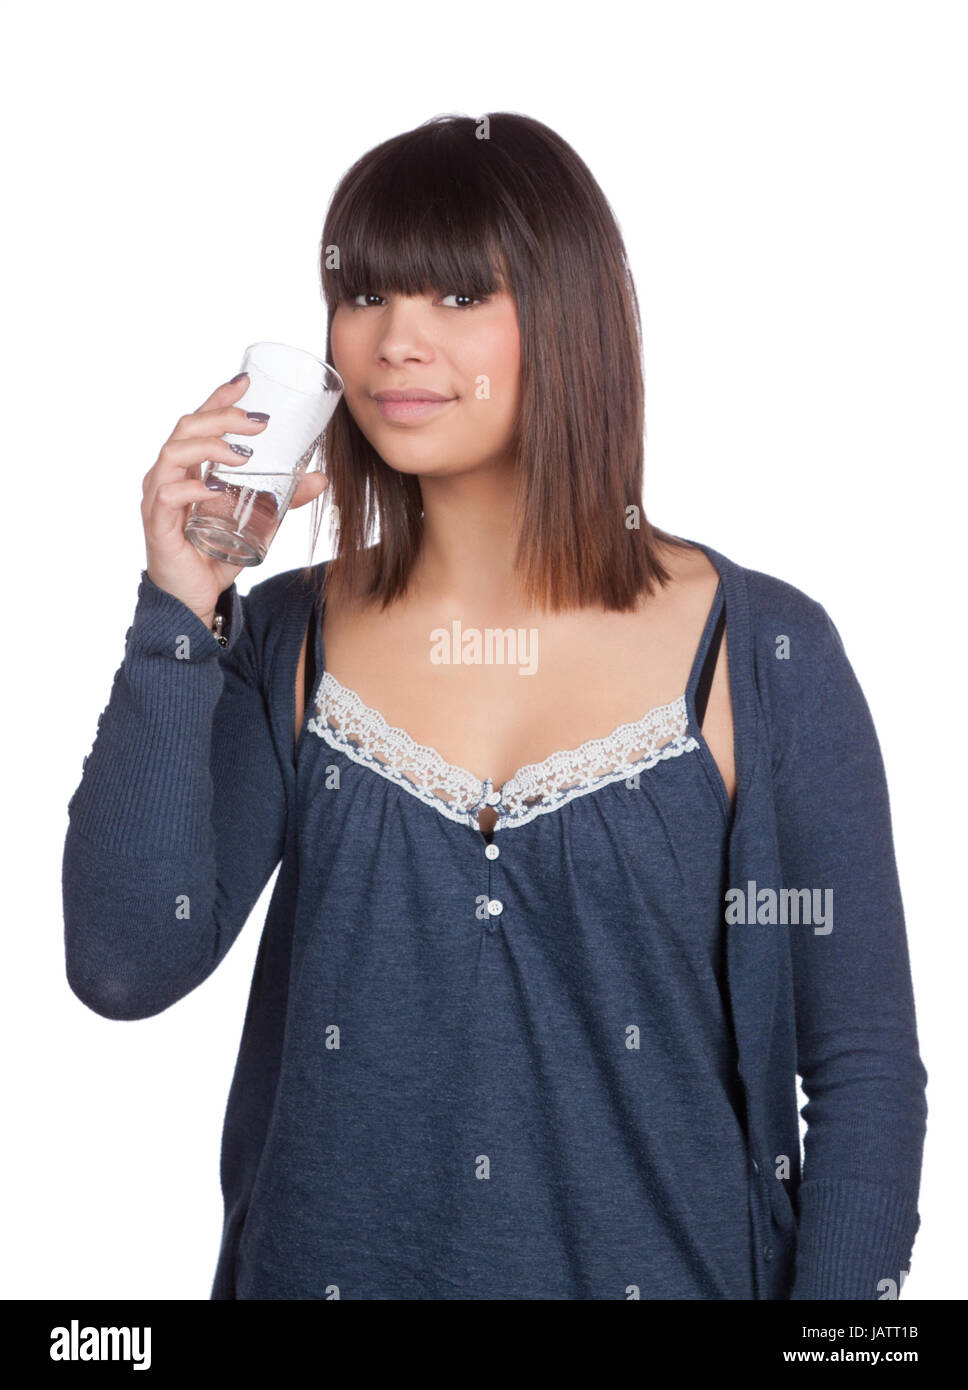 Freigestelltes Foto von einer jungen Frau, die ein Glas Wasser vor ihrem Mund hält Stock Photo